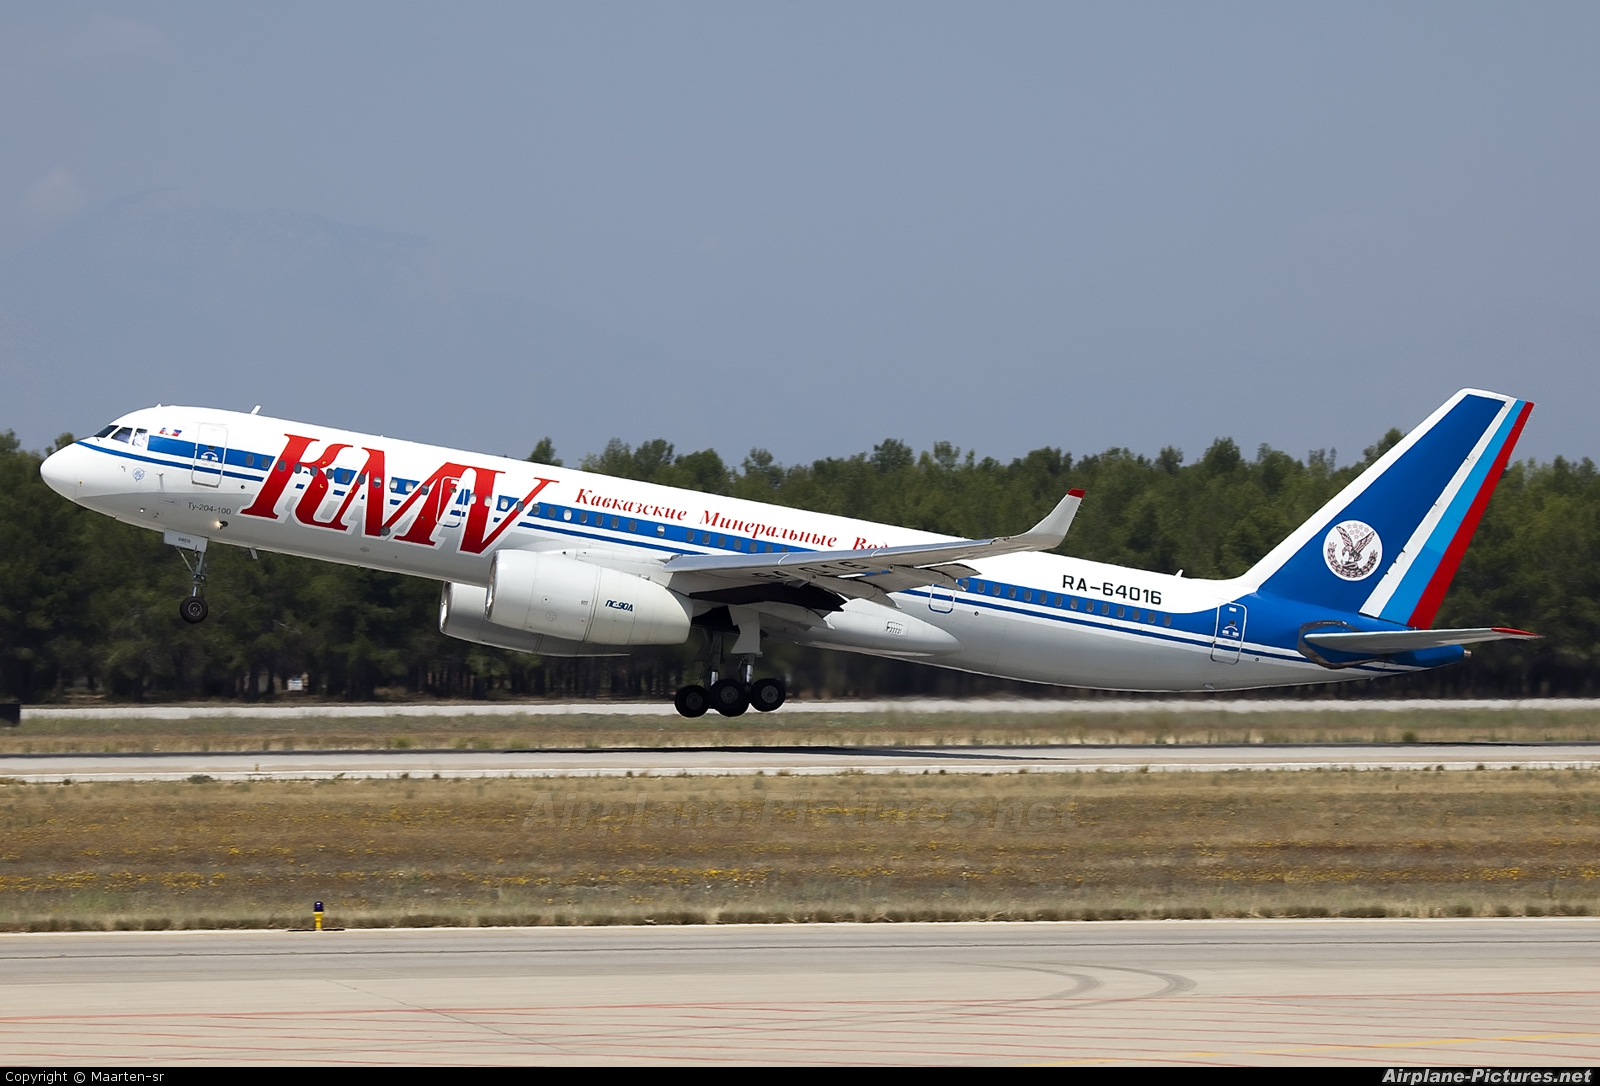 KMV RA-64016 aircraft at Antalya